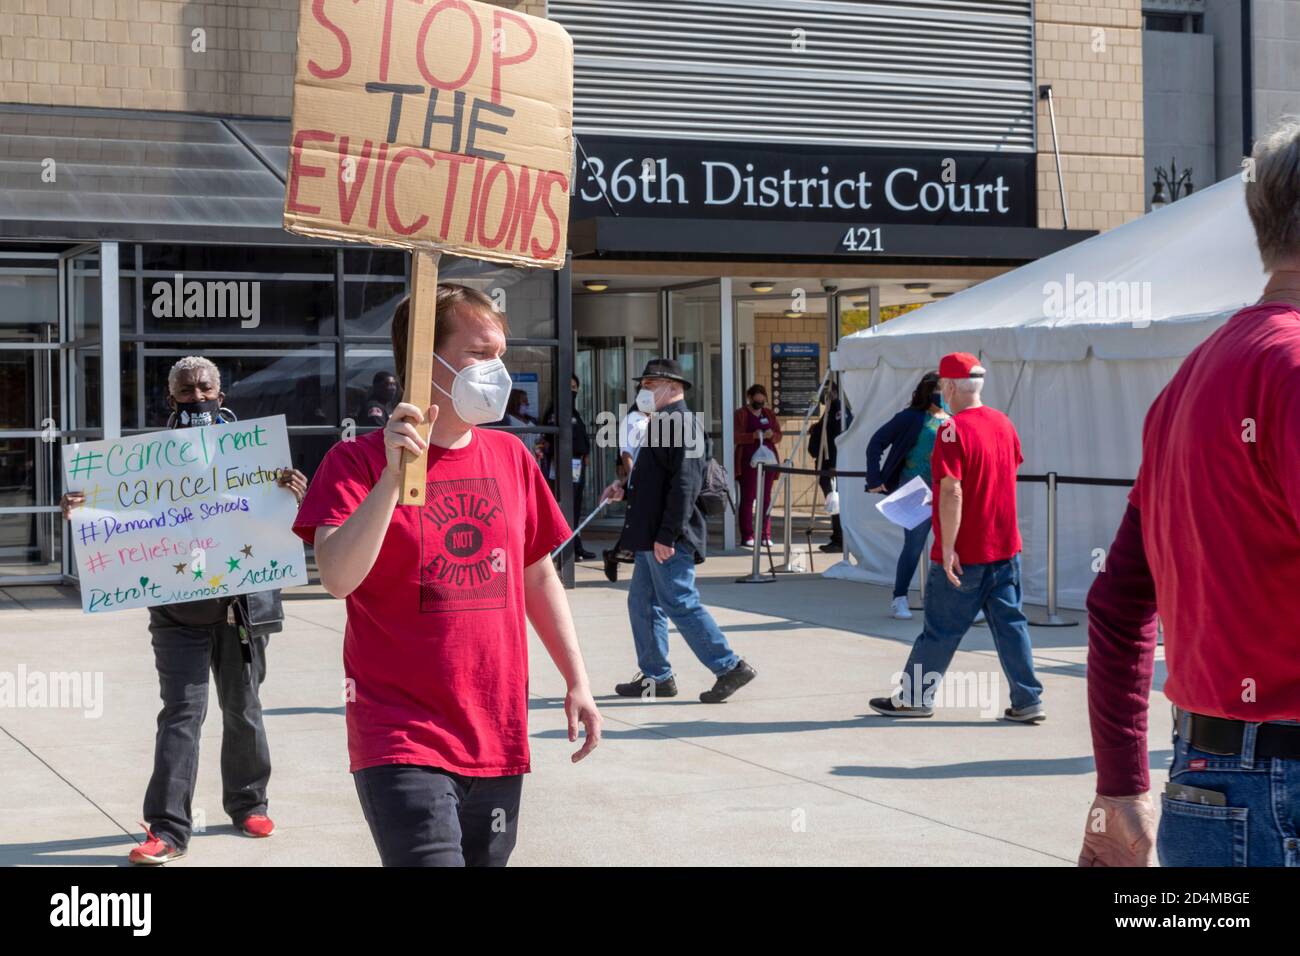 Detroit, Michigan, EE.UU. 9 de octubre de 2020. Los manifestantes piden al juez jefe del 36º Tribunal de Distrito que detenga los procedimientos de desalojo. Dijeron que nadie debería salir de su casa durante la crisis de salud pública del coronavirus. Crédito: Jim West/Alamy Live News Foto de stock